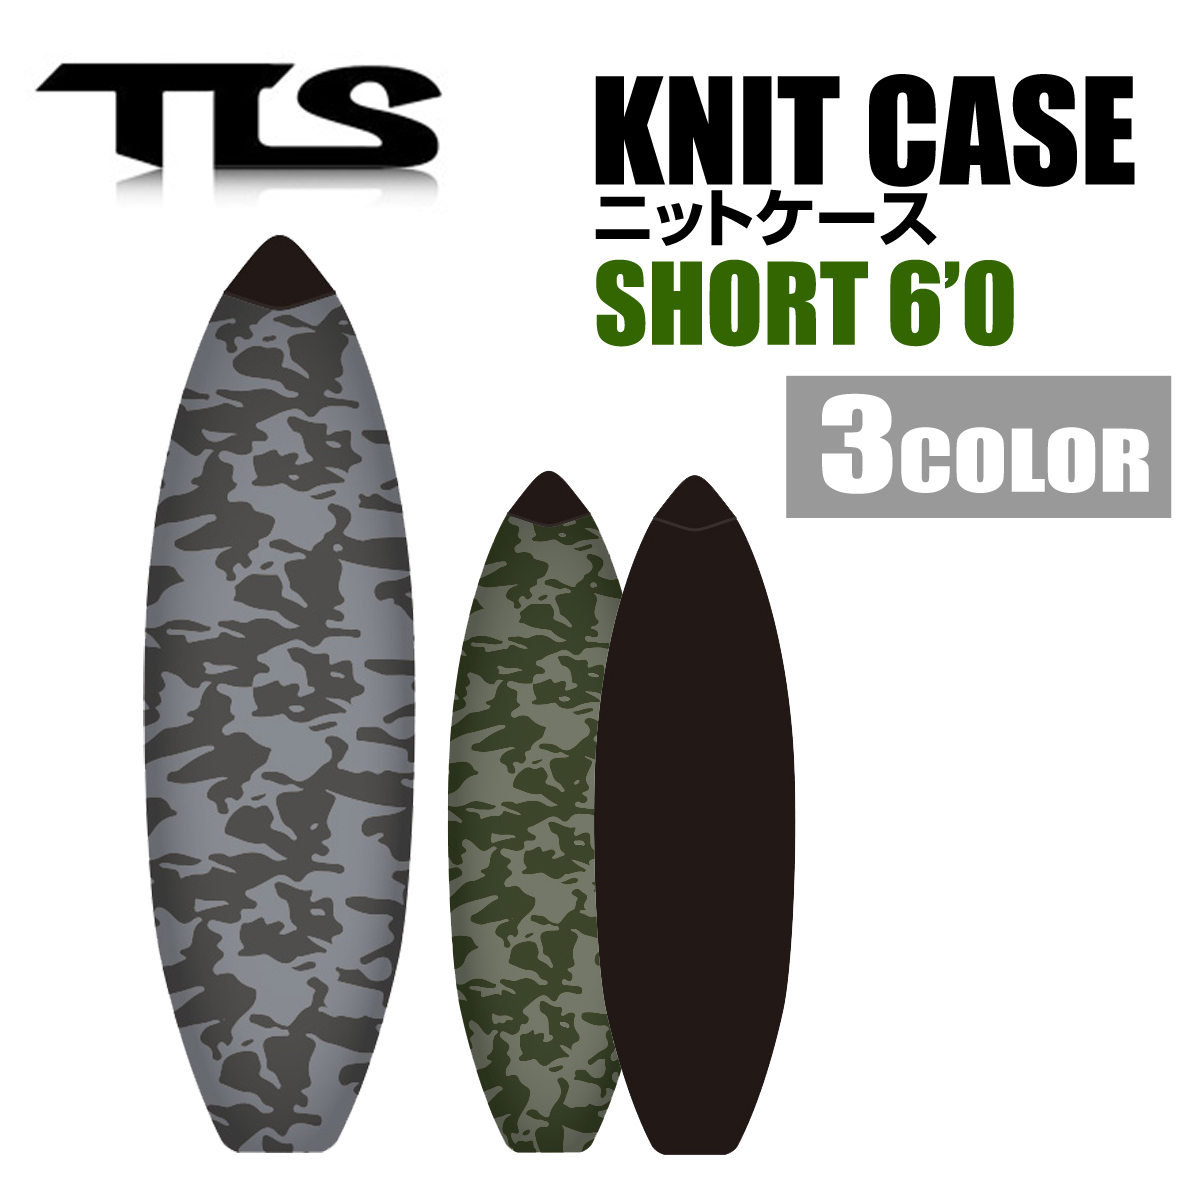 ニットケース ソフトケース TOOLS ツールス KNIT CASE 6'0 SHORT ボードケース ショートボード 6.0f PEパッド付  サーフィン サー :tls21-2knc-s60:X-SPORTS 通販 